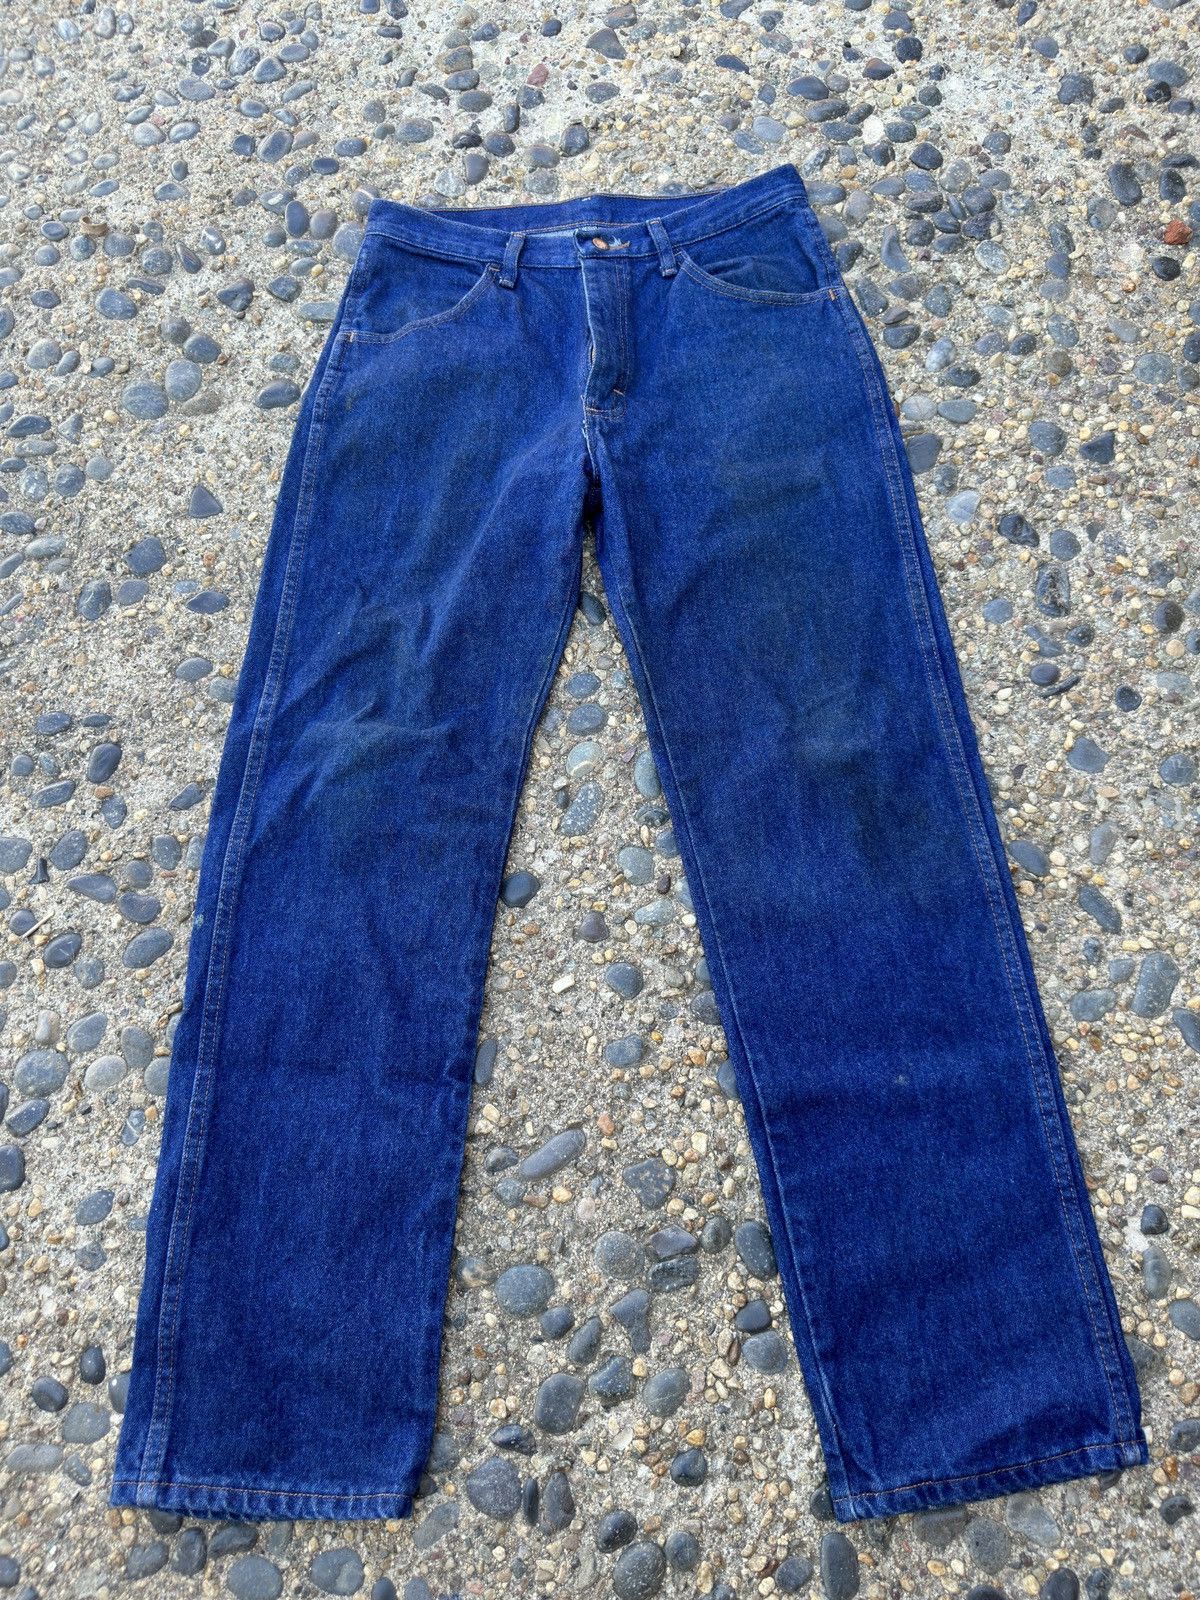 Vintage Vintage Rustler Jeans Size 31x30 Size US 30 / EU 46 - 1 Preview